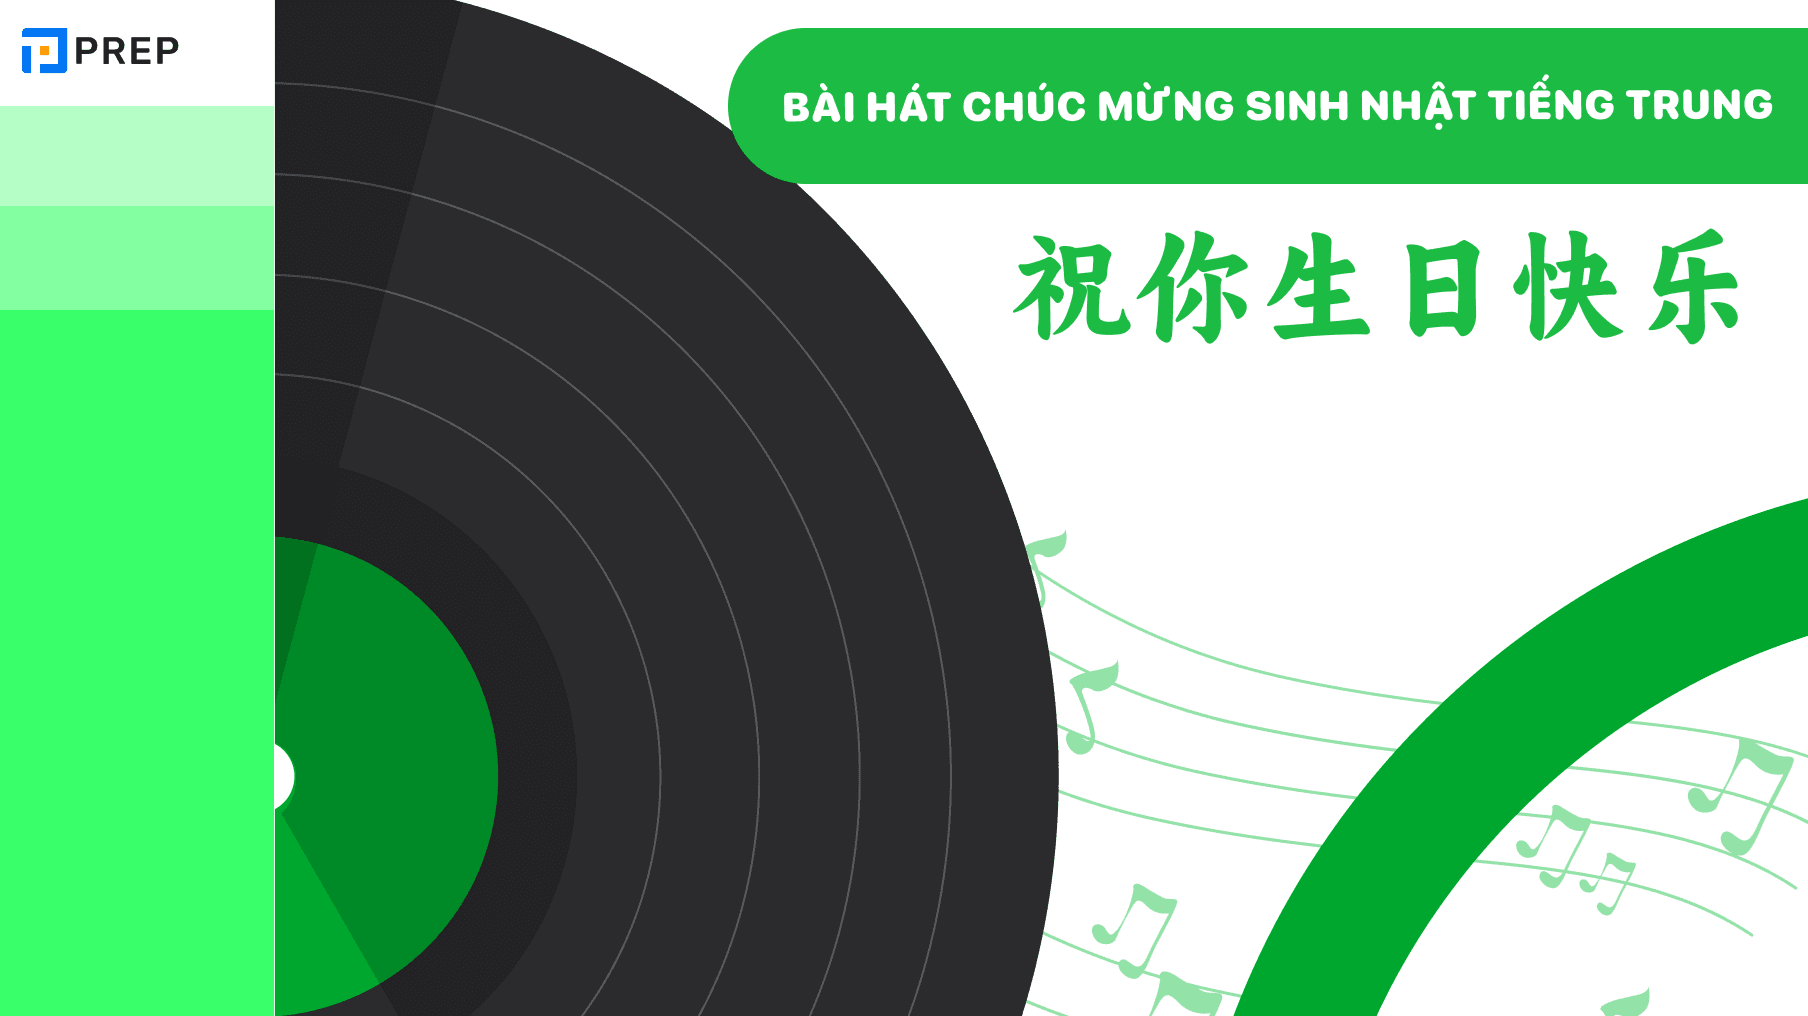 Bài hát Chúc mừng sinh nhật tiếng Trung 